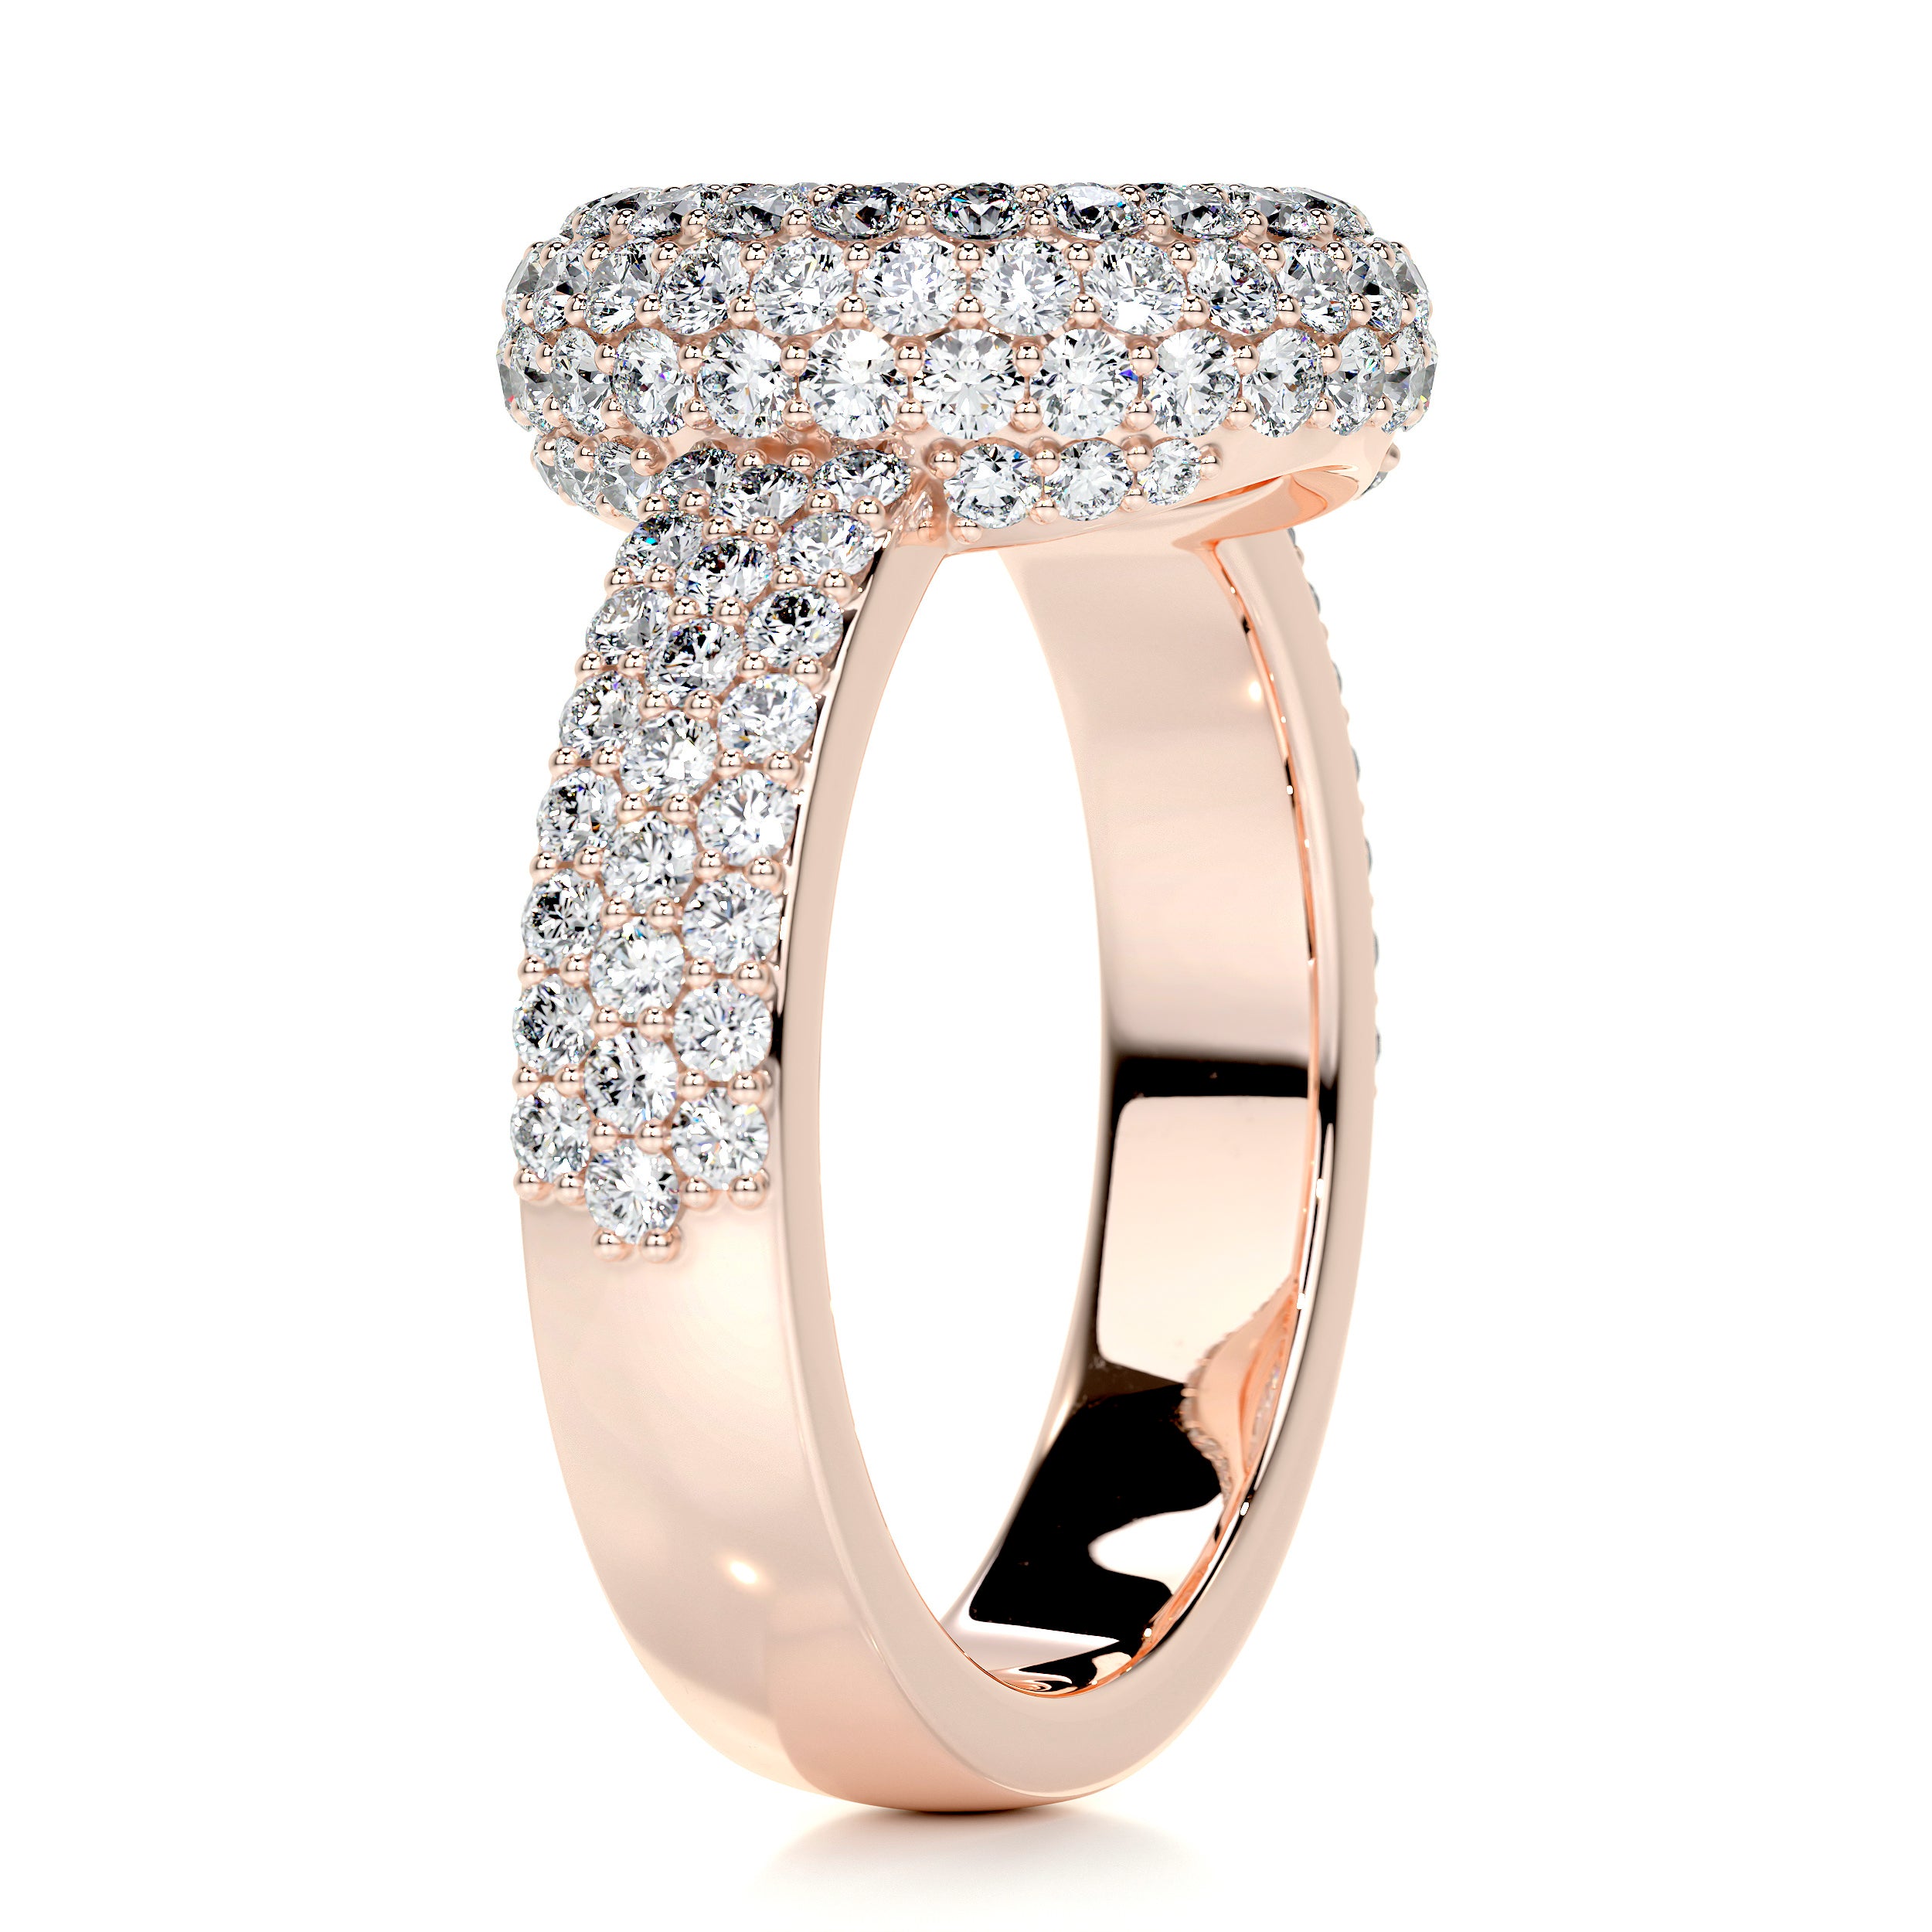 Reagan Diamond Engagement Ring -14K Rose Gold